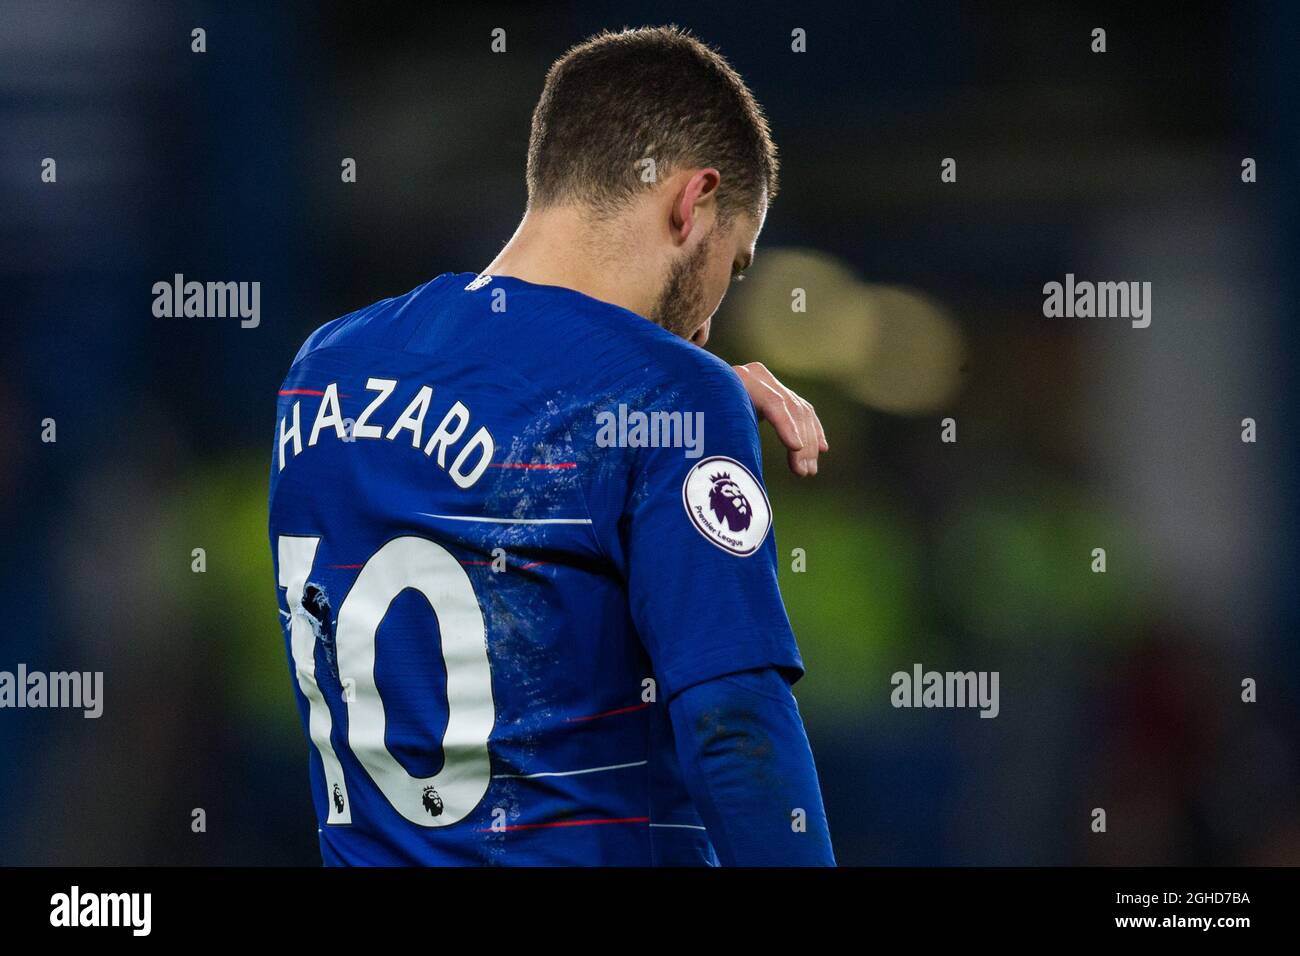 Un agujero se ve en la parte trasera de la camiseta de Eden Hazard of Chelsea durante el partido de la Premier League en el Stamford Bridge Stadium, Fecha de la